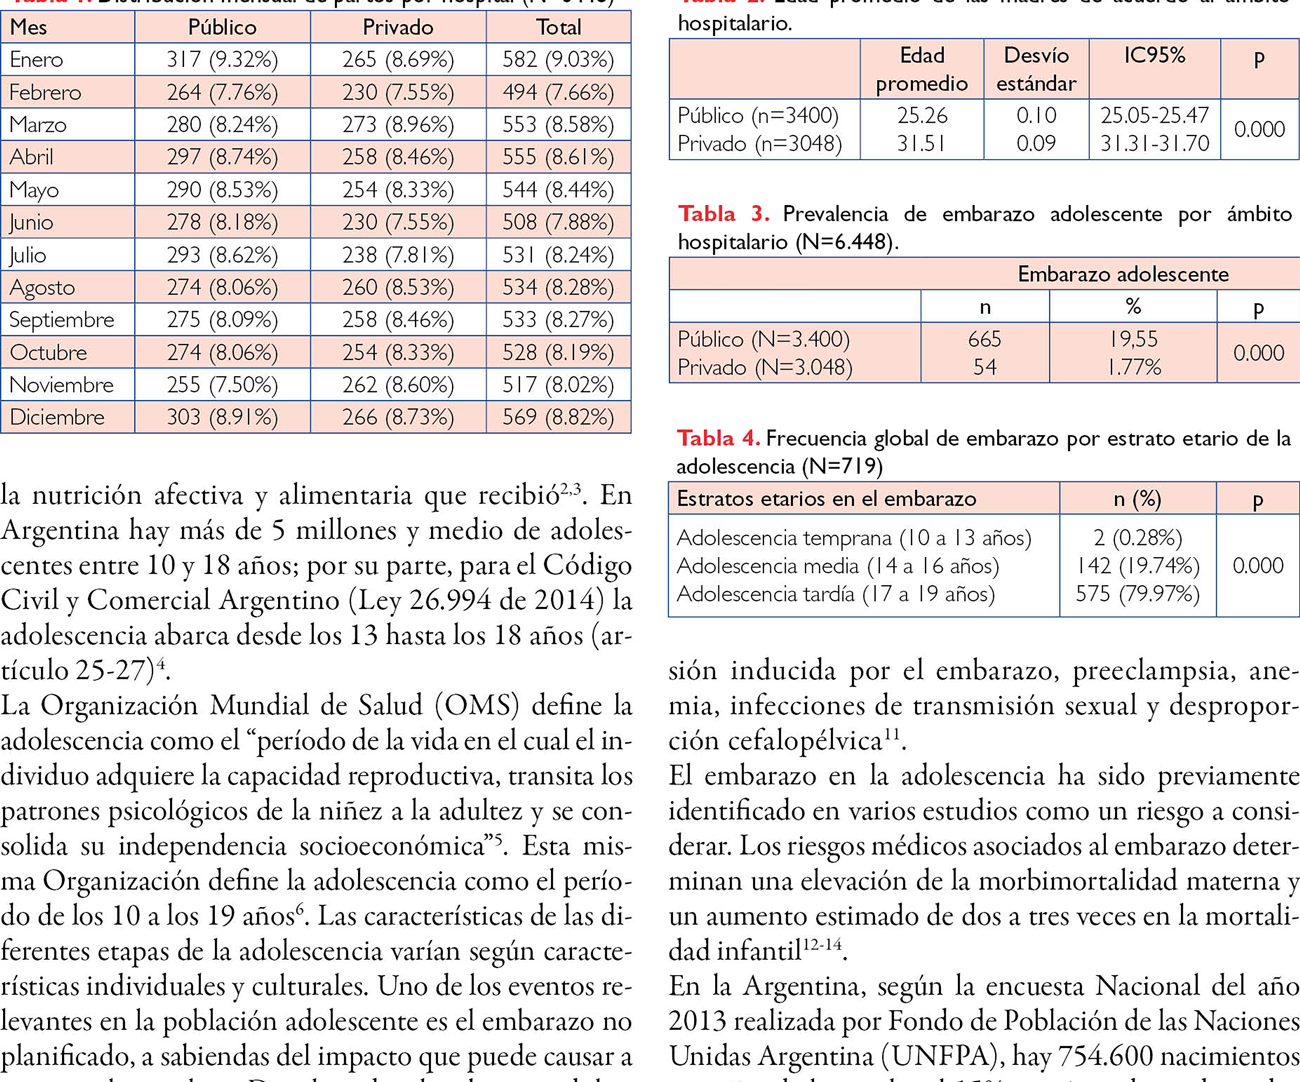 Prevalencia de embarazo adolescente en un hospital público comparada con la de un hospital privado en la Provincia de Buenos Aires en el año 2018